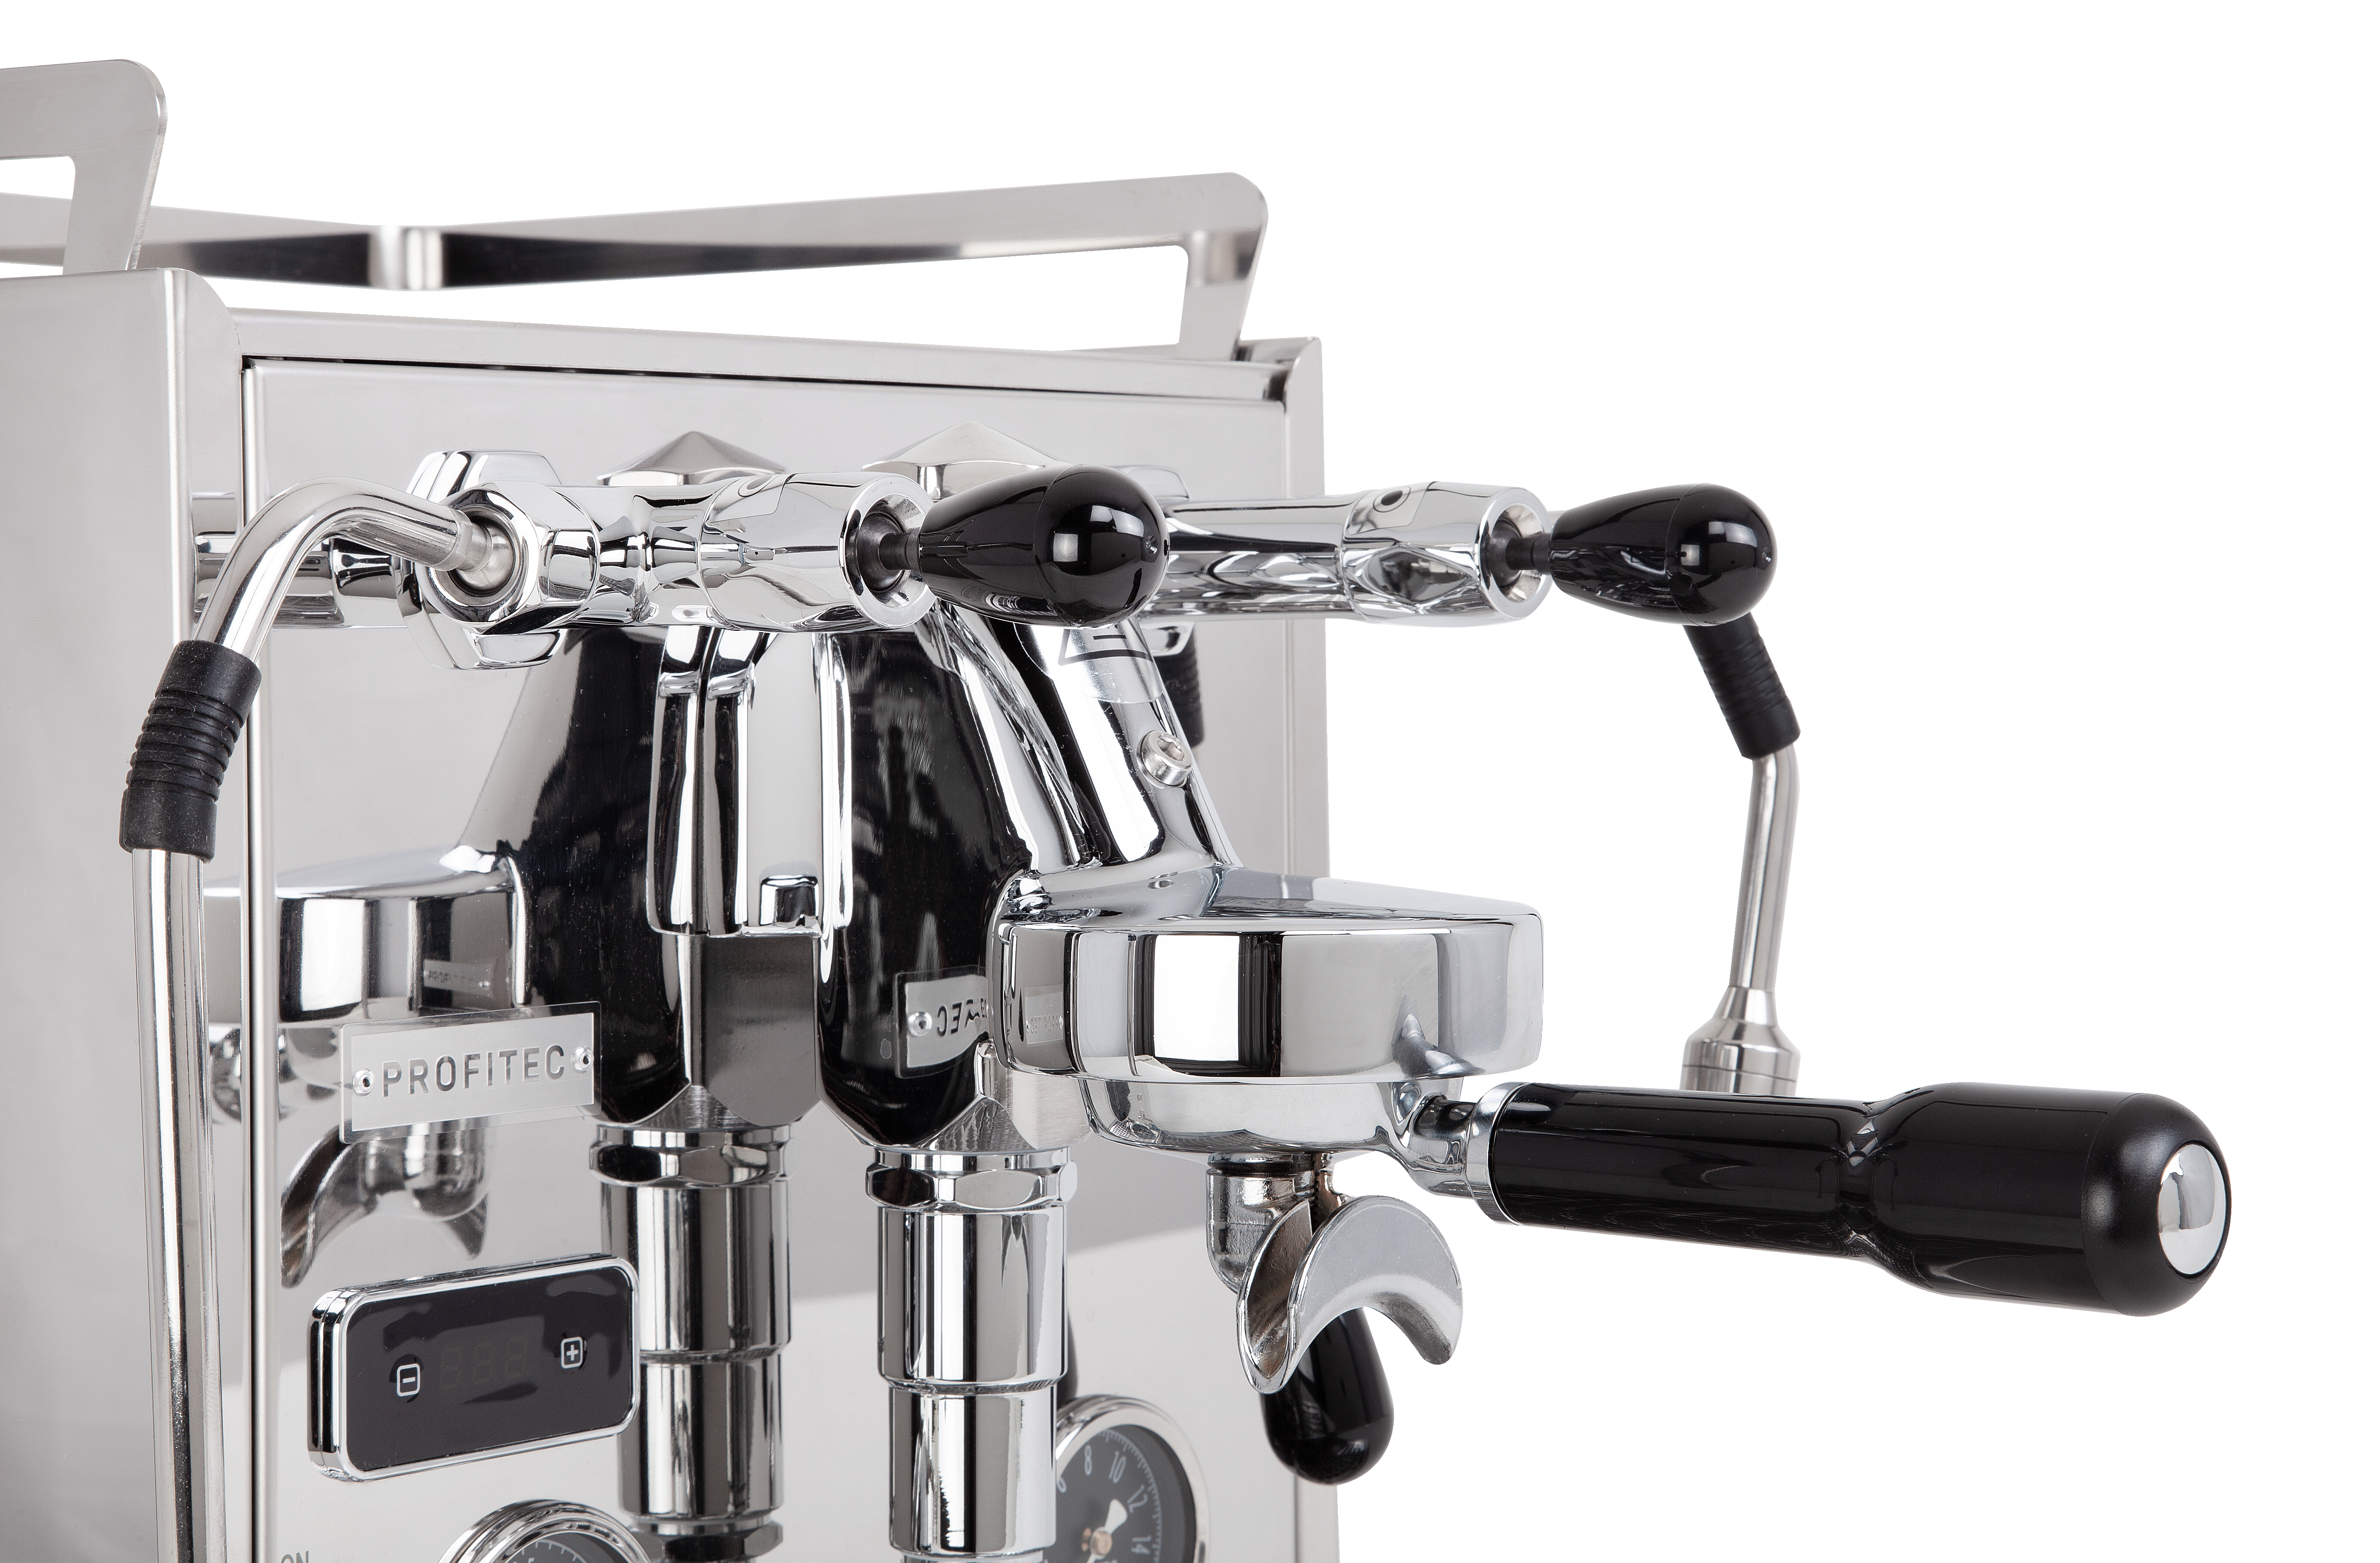 Profitec Pro 600 Quick Steam PID Dualboiler Espressomaschine